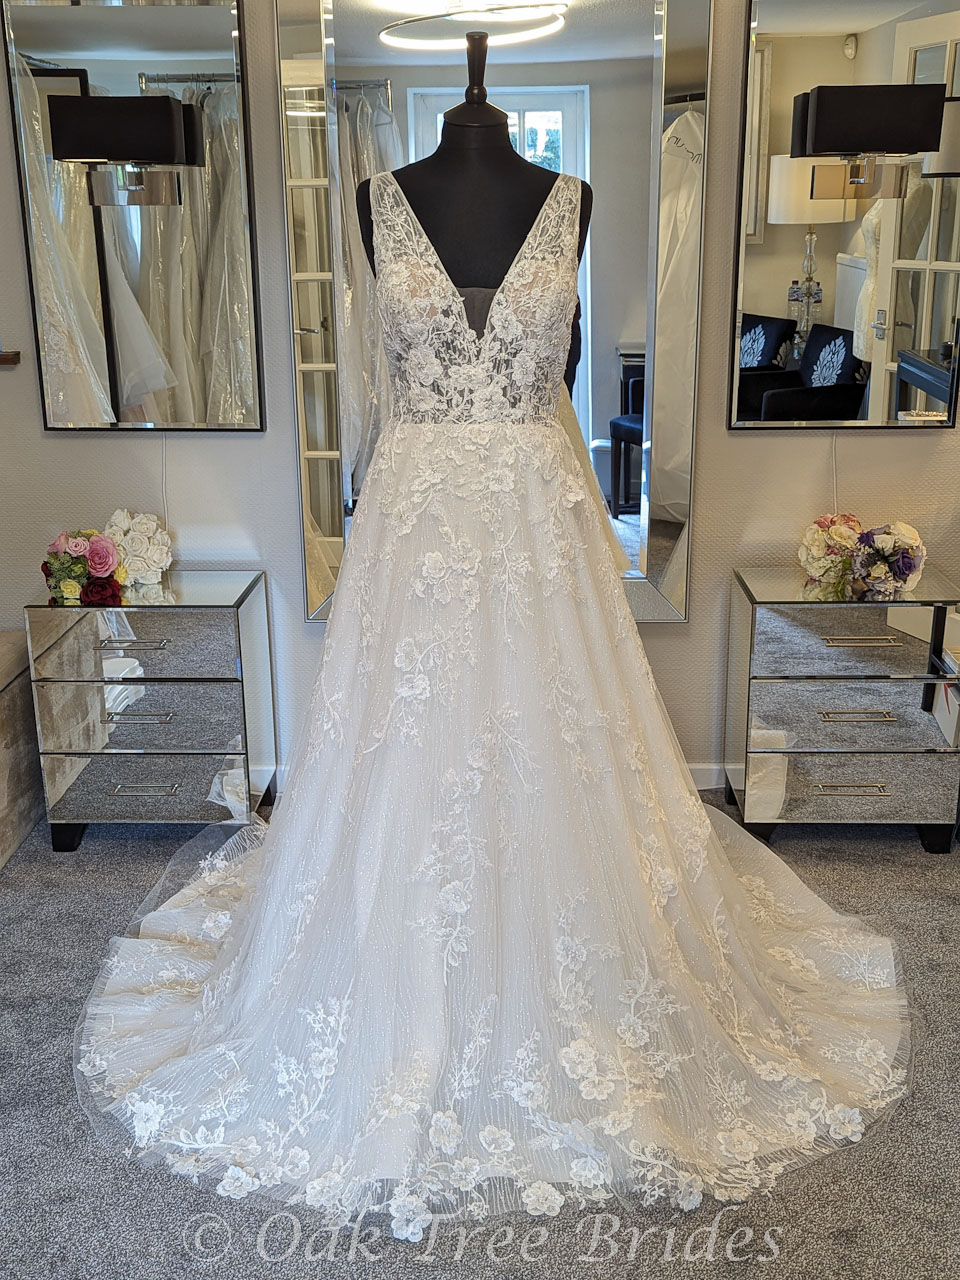 https://www.oaktreebrides.co.uk/images/bridal-gowns/size-12/blue-by-enzoani/marlowe/Marlowe-wedding-dress-1.jpg